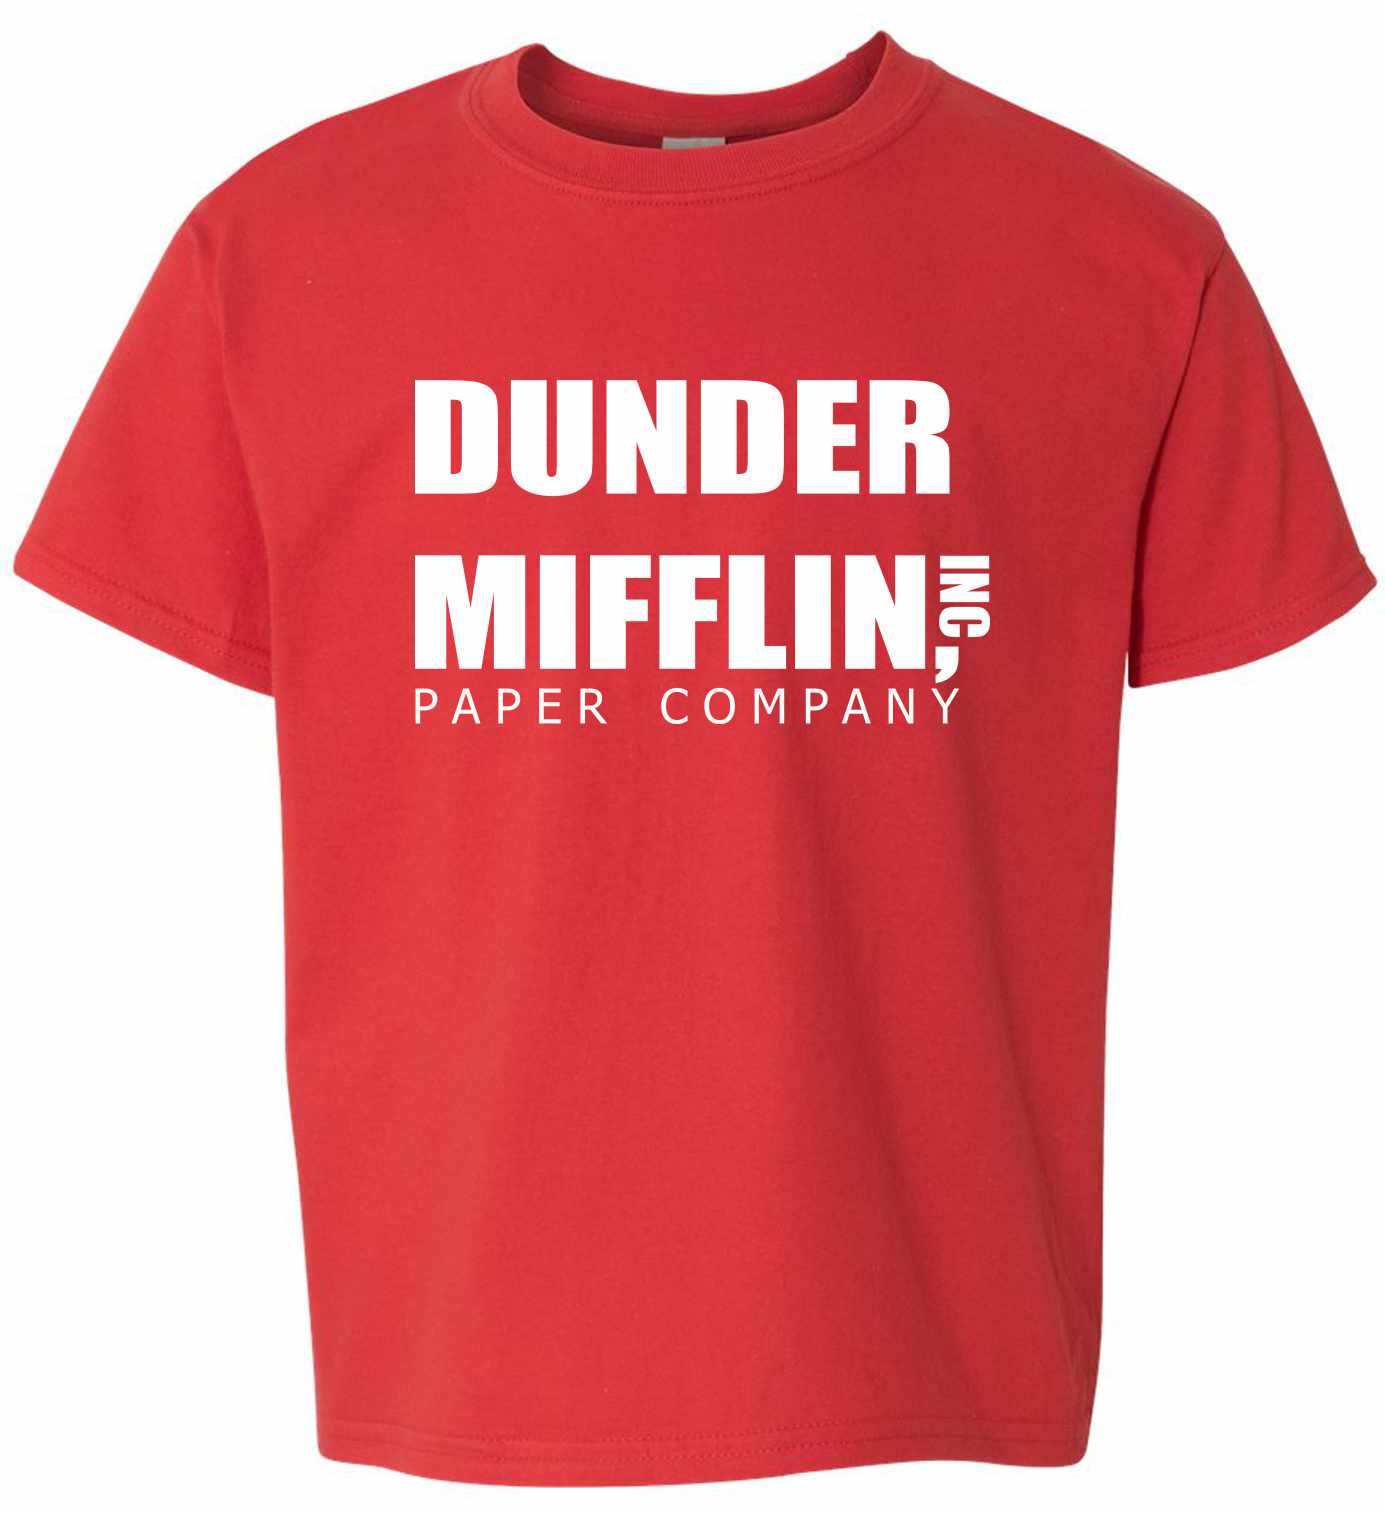 DUNDER MIFFLIN PAPER COMPANY on Kids T-Shirt